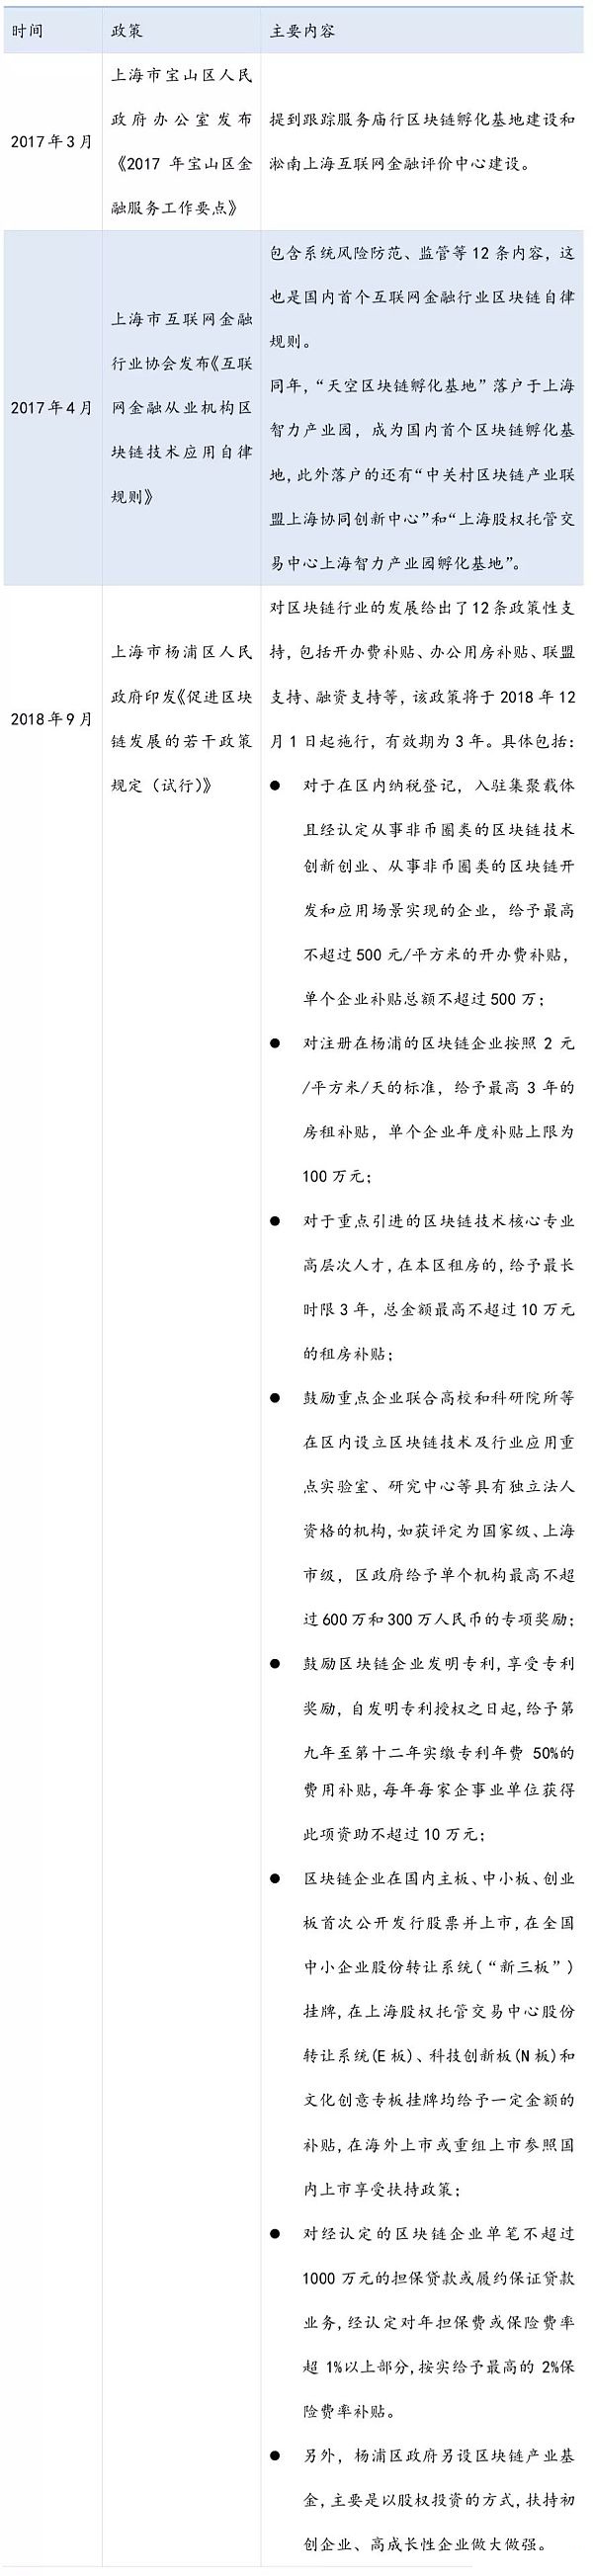 上海市区块链产业政策